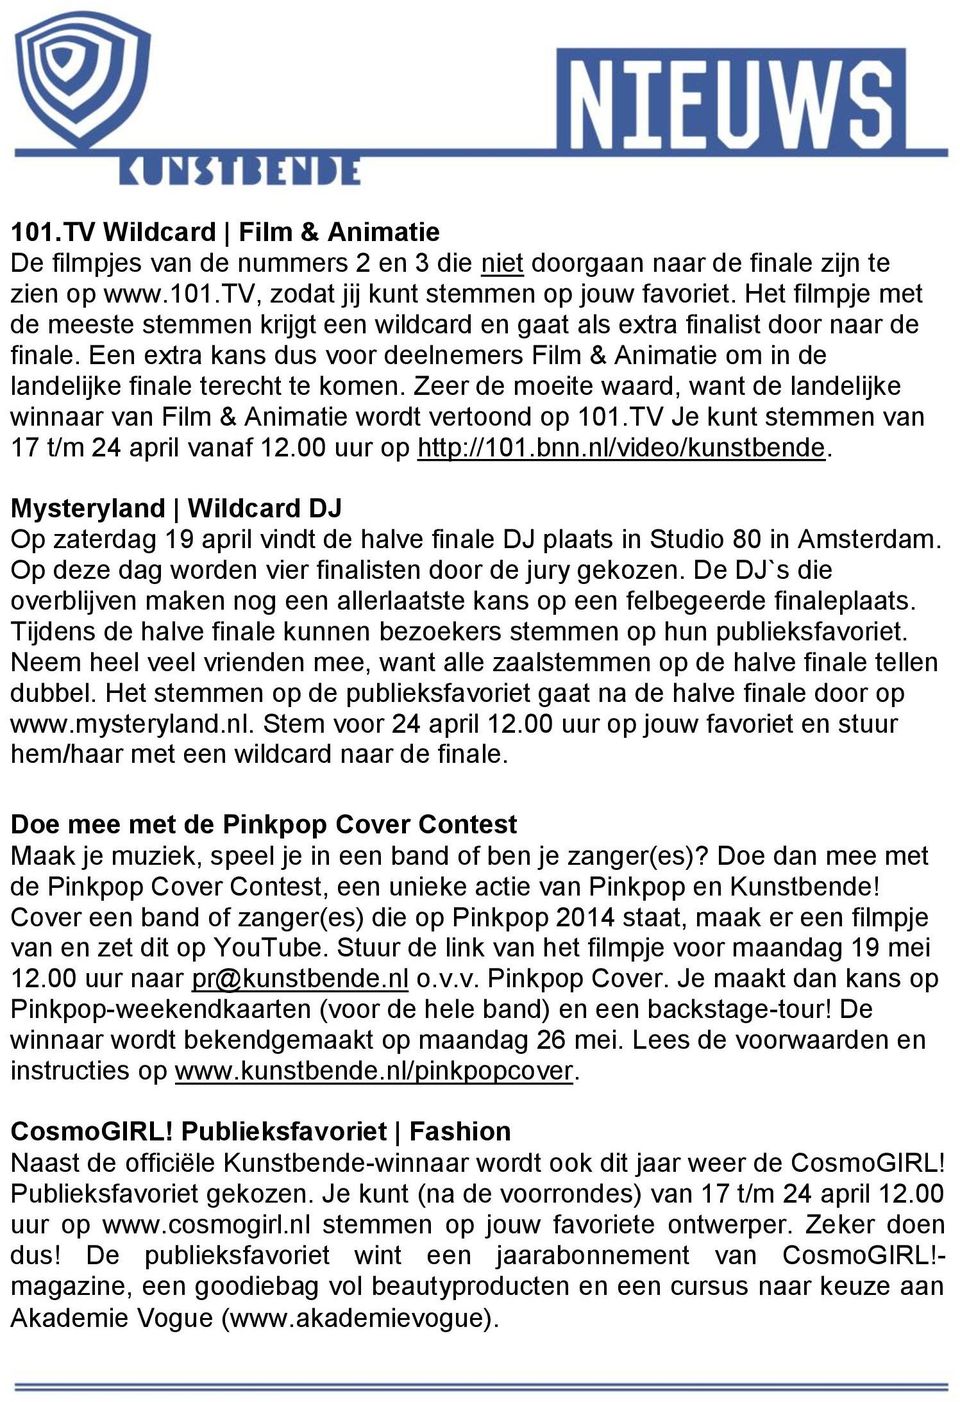 Zeer de moeite waard, want de landelijke winnaar van Film & Animatie wordt vertoond op 101.TV Je kunt stemmen van 17 t/m 24 april vanaf 12.00 uur op http://101.bnn.nl/video/kunstbende.